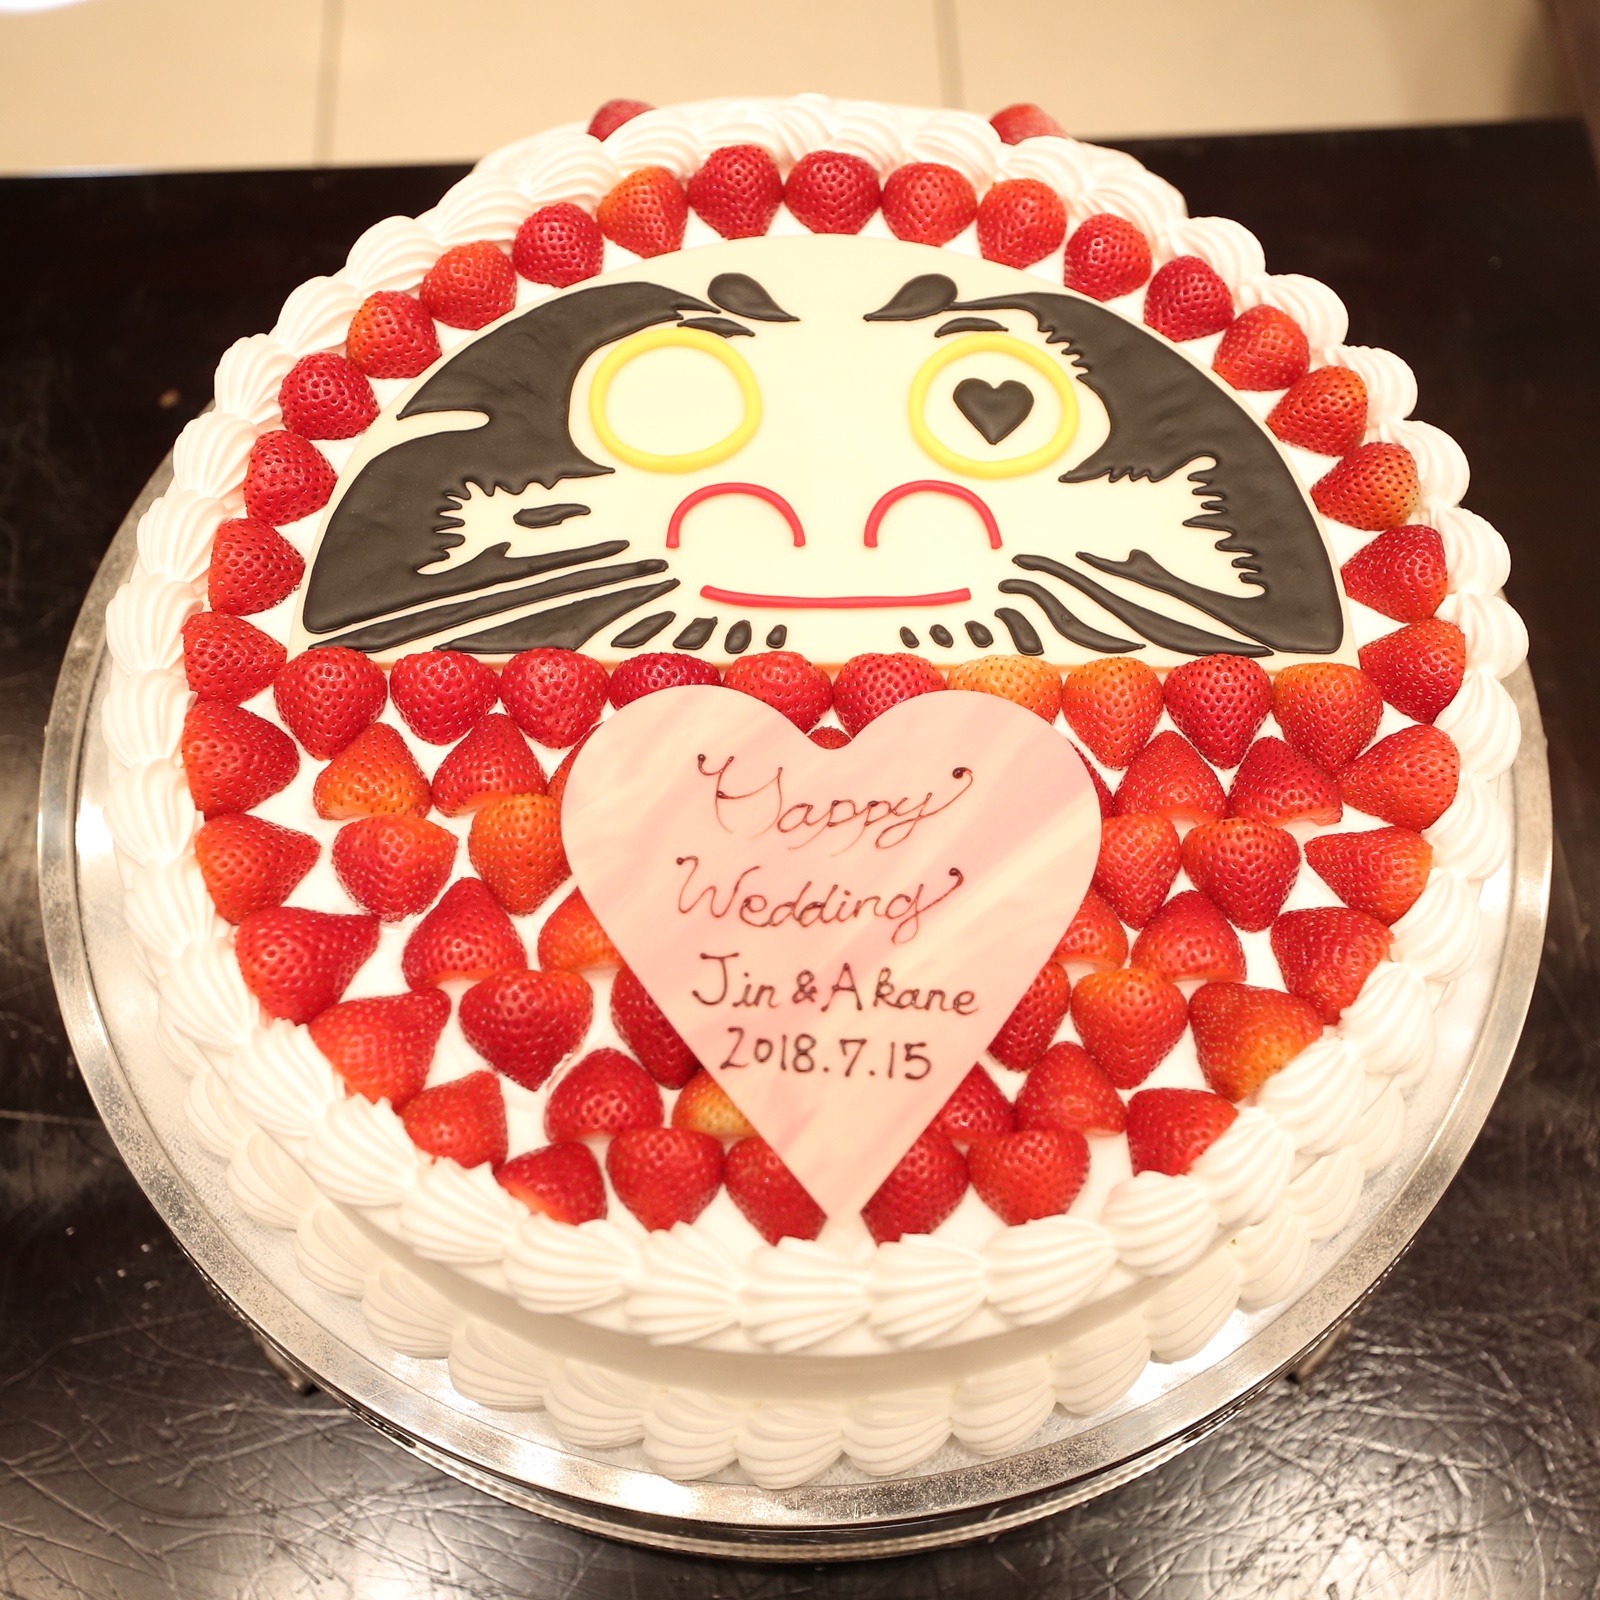 和装でのウェディングケーキ入刀は ニュース ブログ 公式 ヴィラ アンジェリカ 滋賀 近江八幡の結婚式場